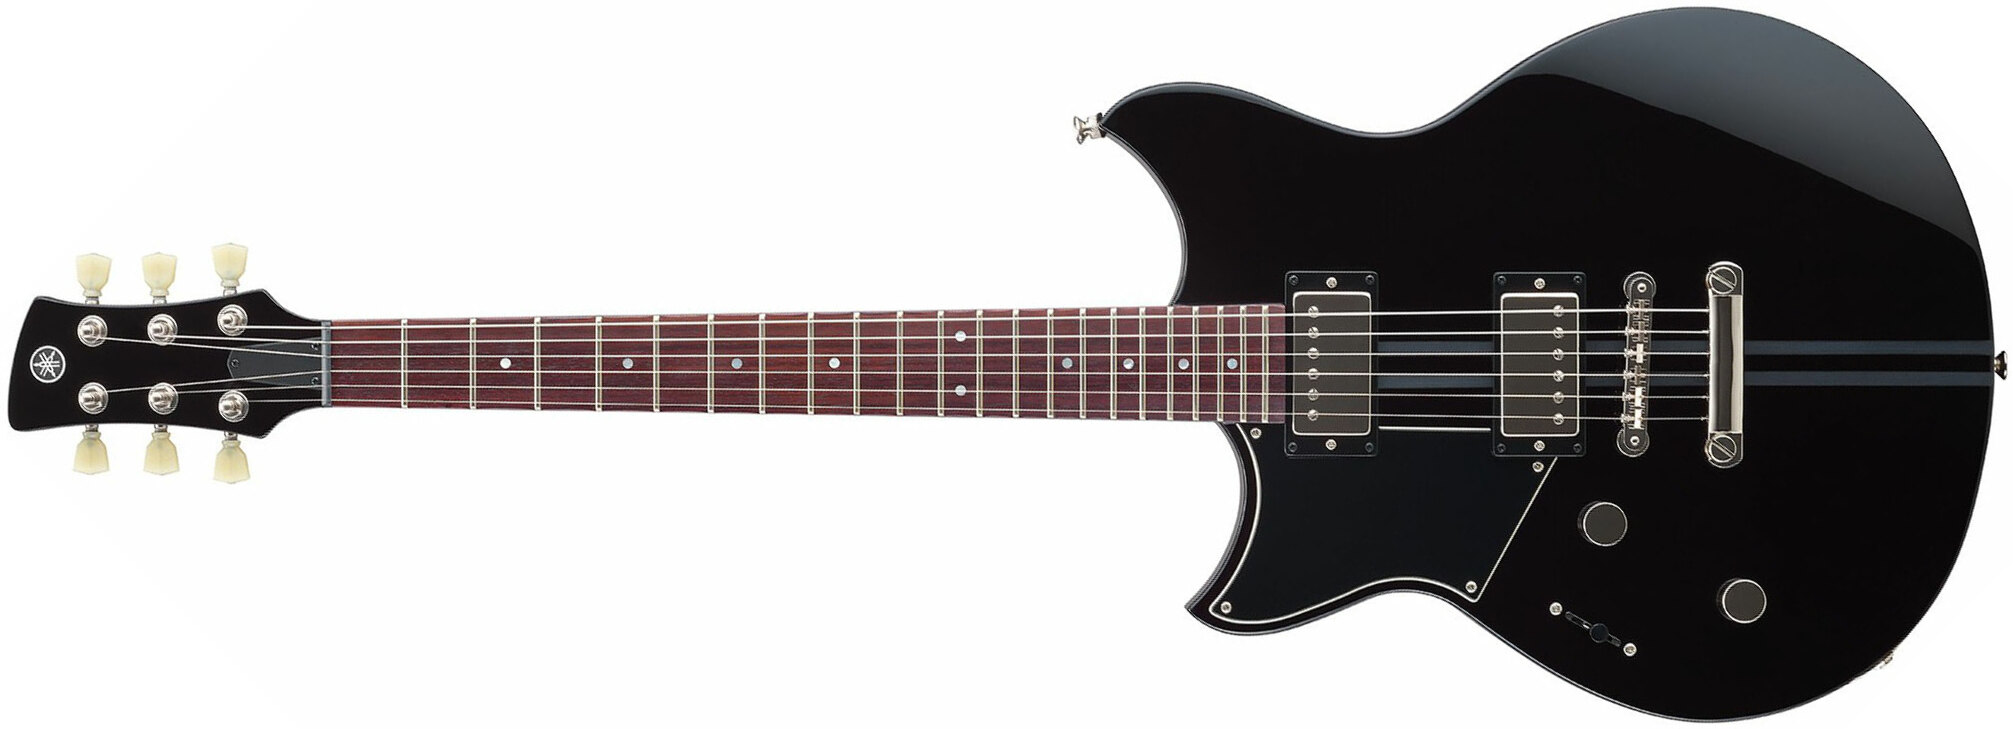 Yamaha Rse20l Revstar Element Lh Gaucher Hh Ht Rw - Black - E-Gitarre für Linkshänder - Main picture